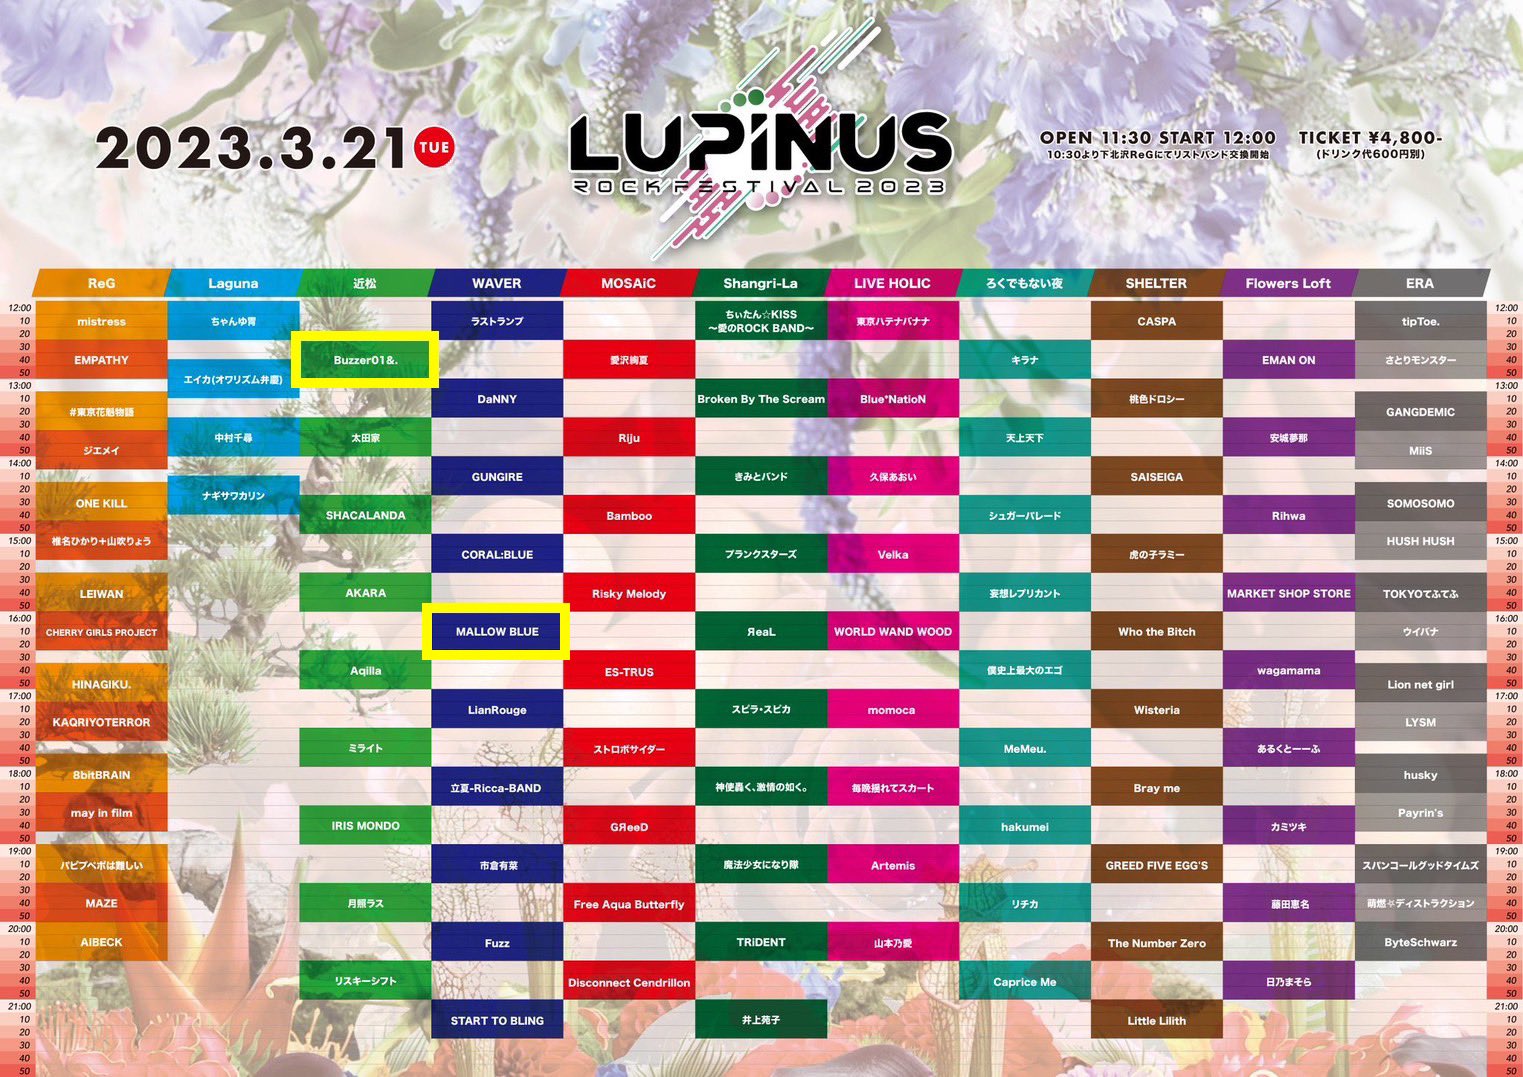 星井あおサポート出演公演(Buzzer01&. ＆ MALLOW BLUE)『Girl’s UP!!!&ファミメ!presents “LUPINUS ROCK FESTIVAL 2023“』